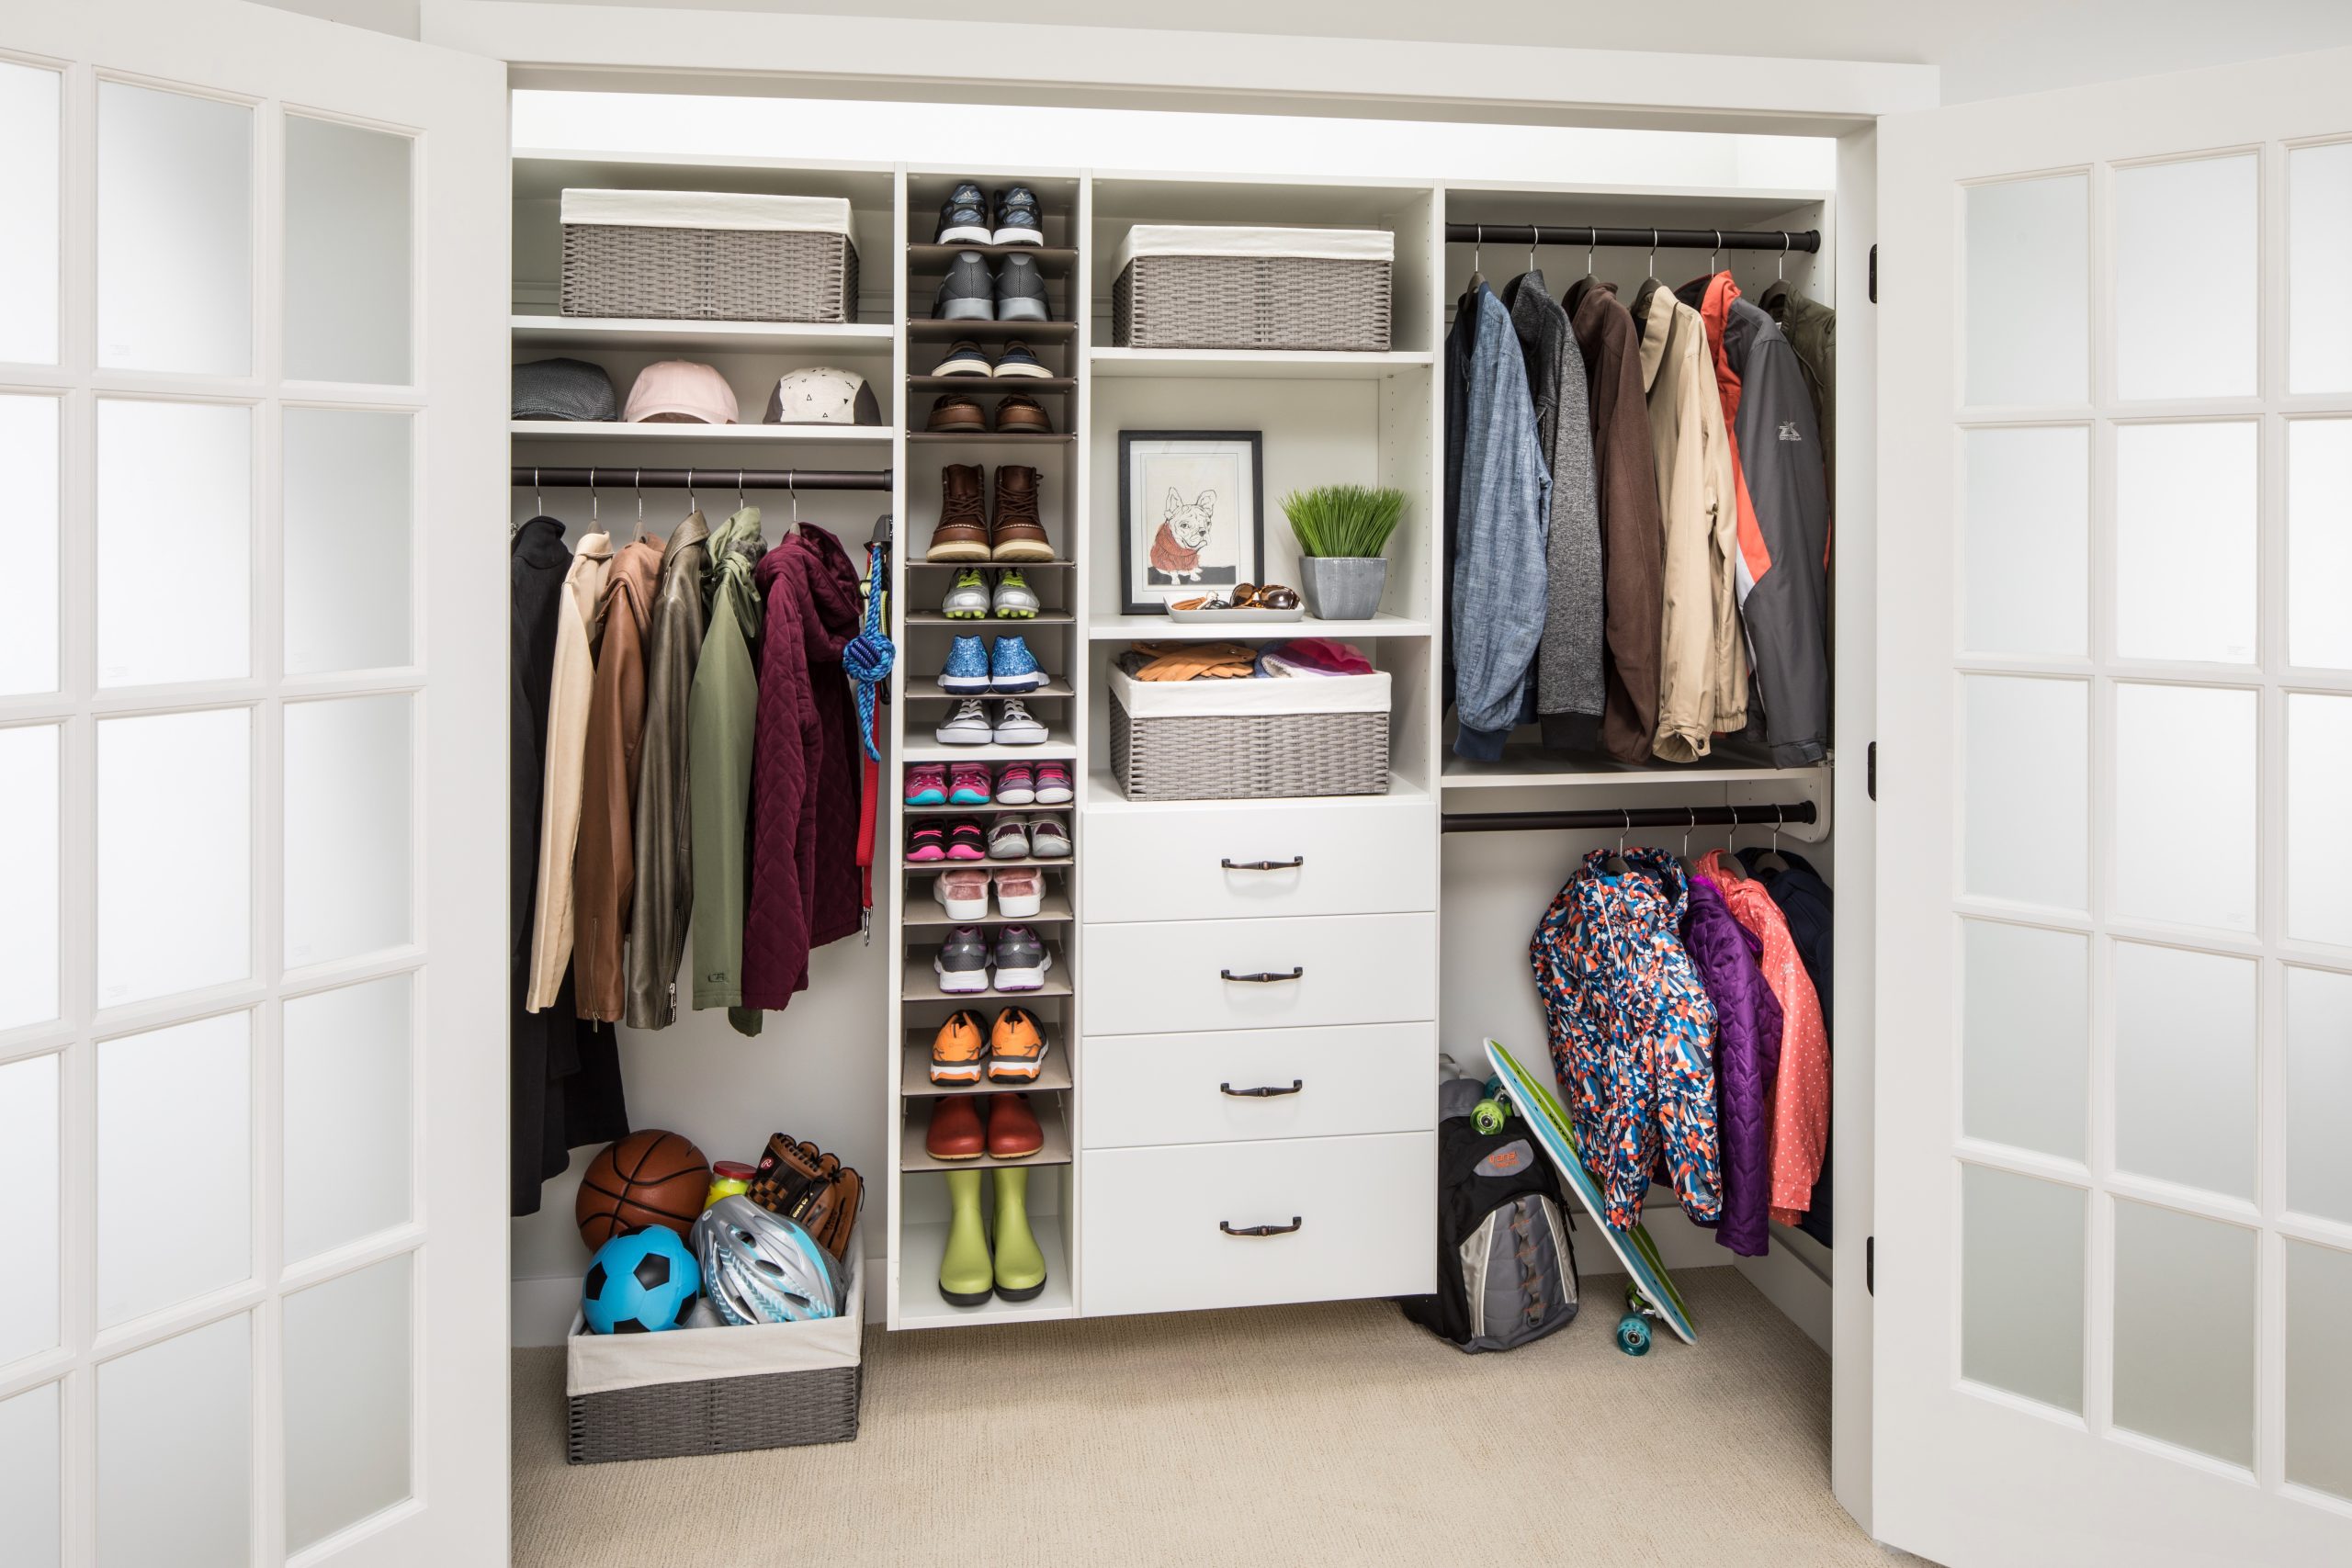 How to Design & Organize Your Dream Closet